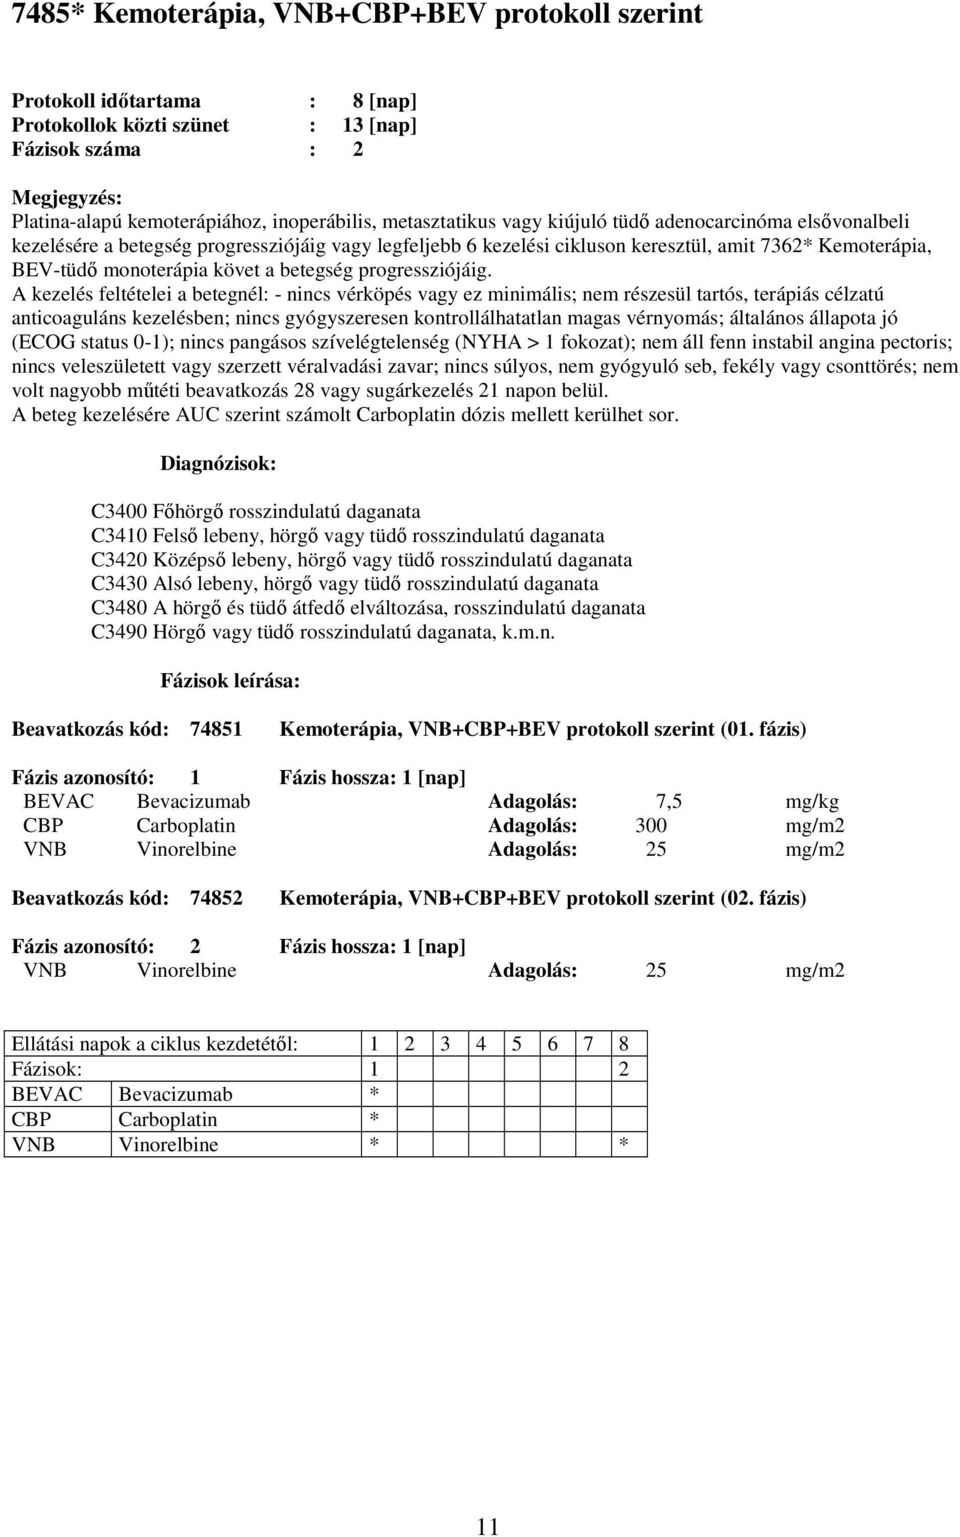 fázis) CBP Carboplatin Adagolás: 300 mg/m2 VNB Vinorelbine Adagolás: 25 mg/m2 Beavatkozás kód: 74852 Kemoterápia, VNB+CBP+BEV protokoll